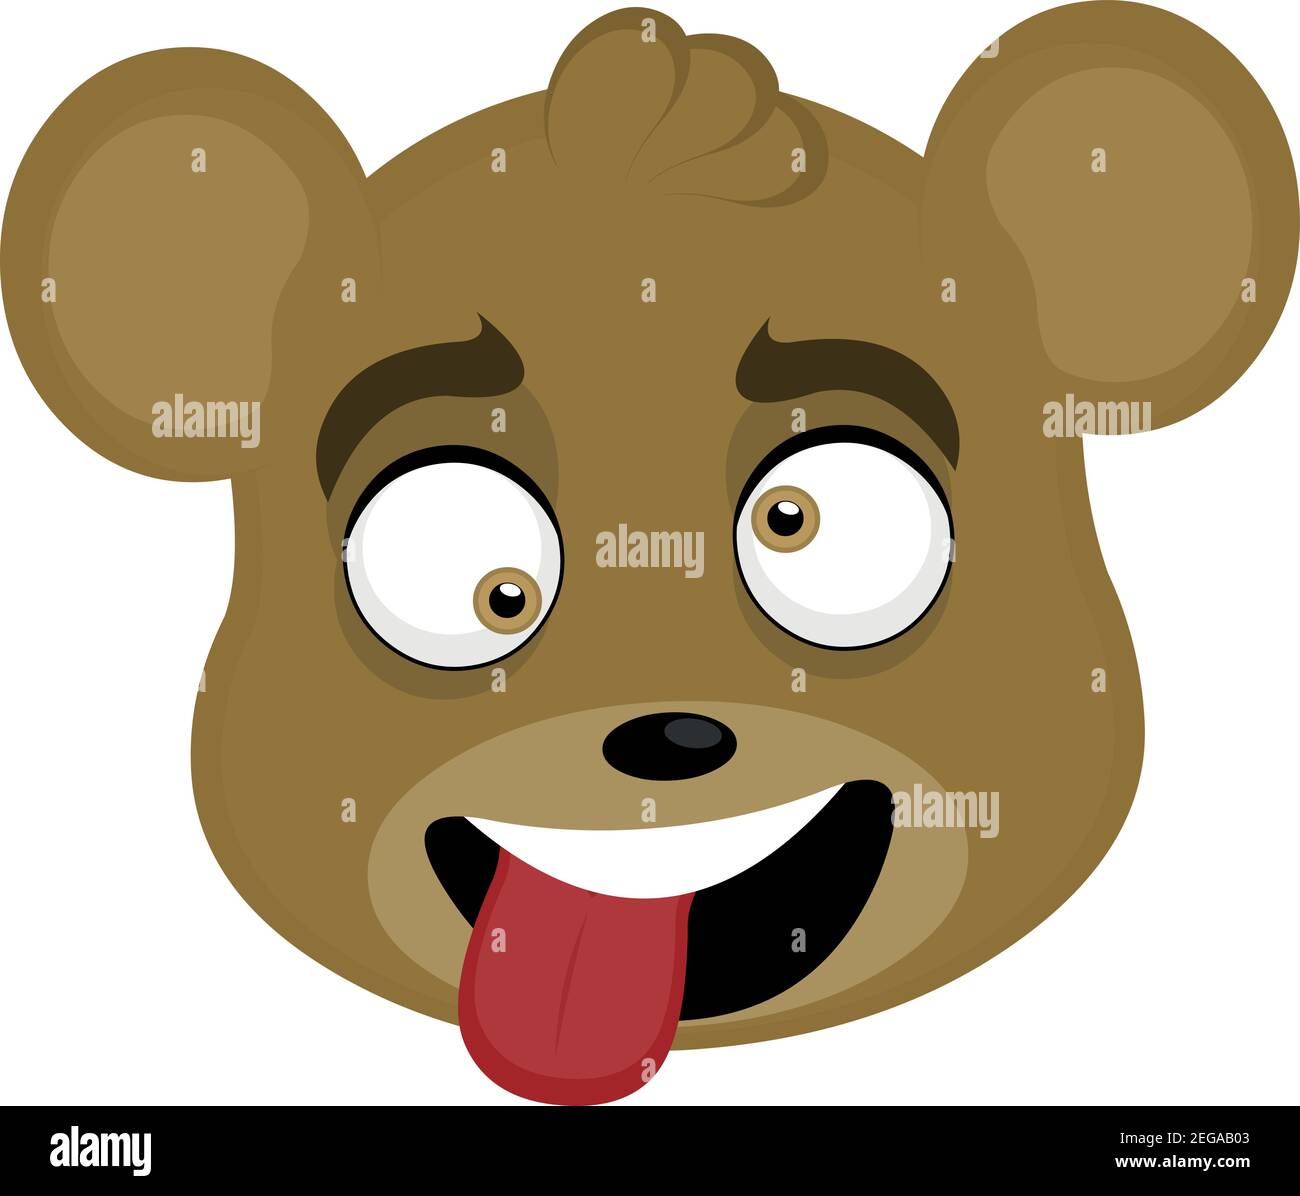 Illustration vectorielle caricature de la tête d'un ours avec une expression moqueuse avec des yeux sauvages et en collant sa langue avec une bouche ouverte Illustration de Vecteur